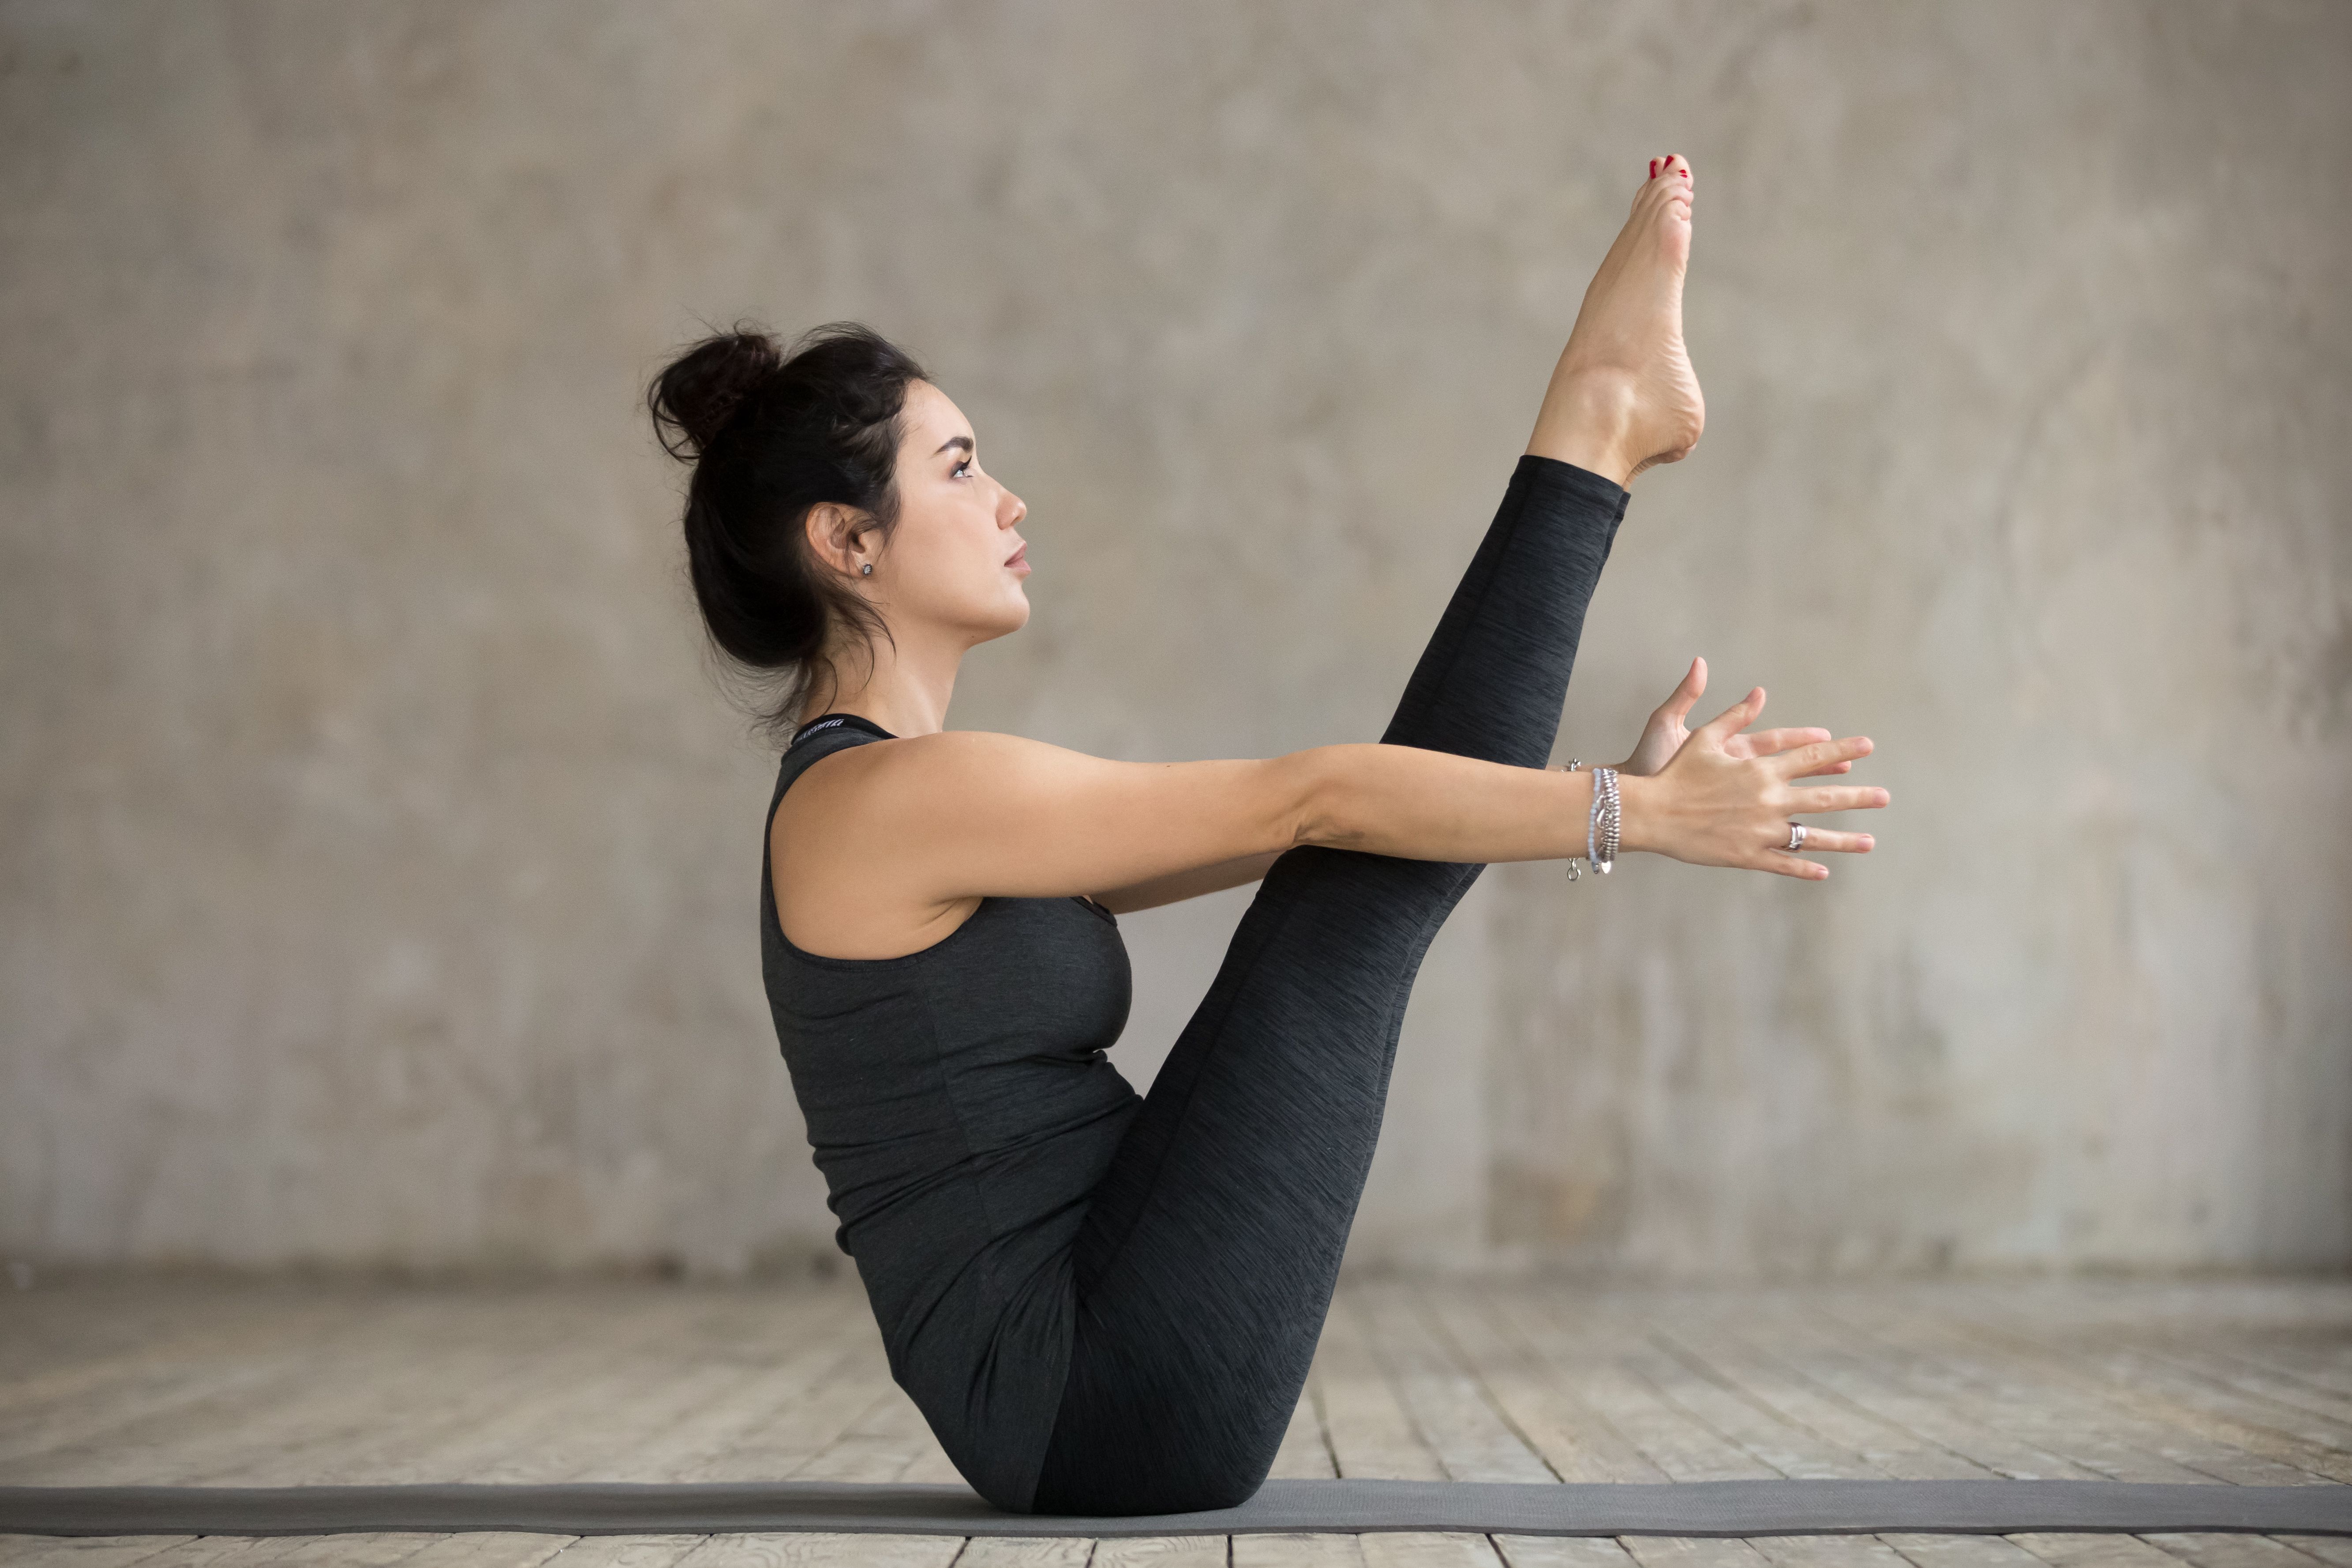 Accesorios de yoga y pilates para entrenar cuerpo y mente en casa